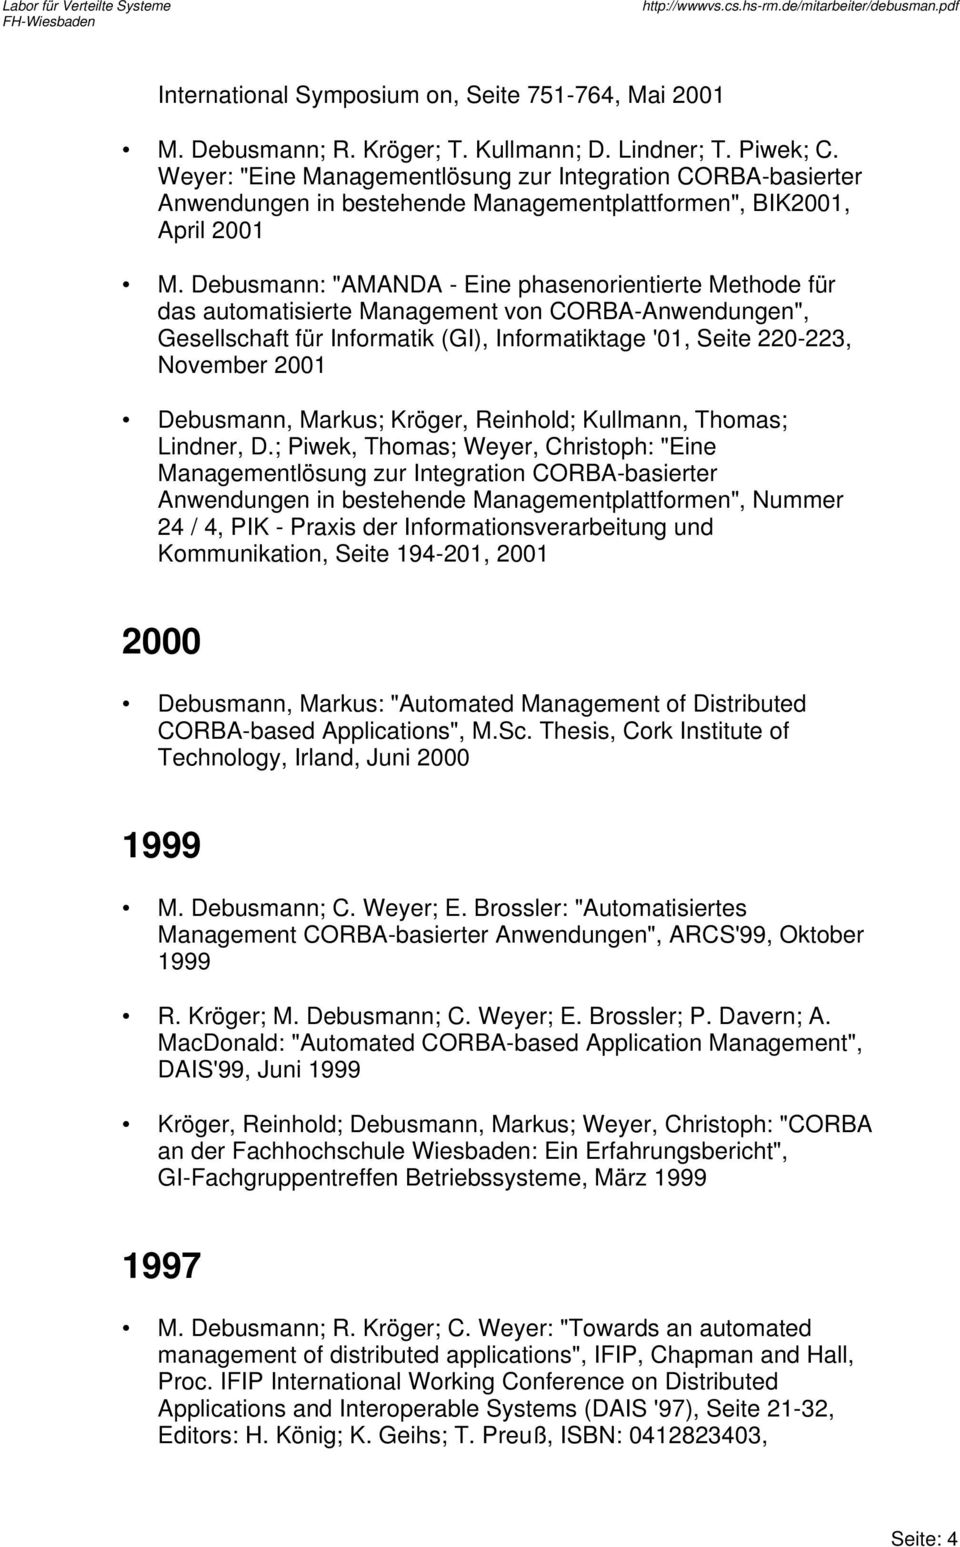 Debusmann: "AMANDA - Eine phasenorientierte Methode für das automatisierte Management von CORBA-Anwendungen", Gesellschaft für Informatik (GI), Informatiktage '01, Seite 220-223, November 2001